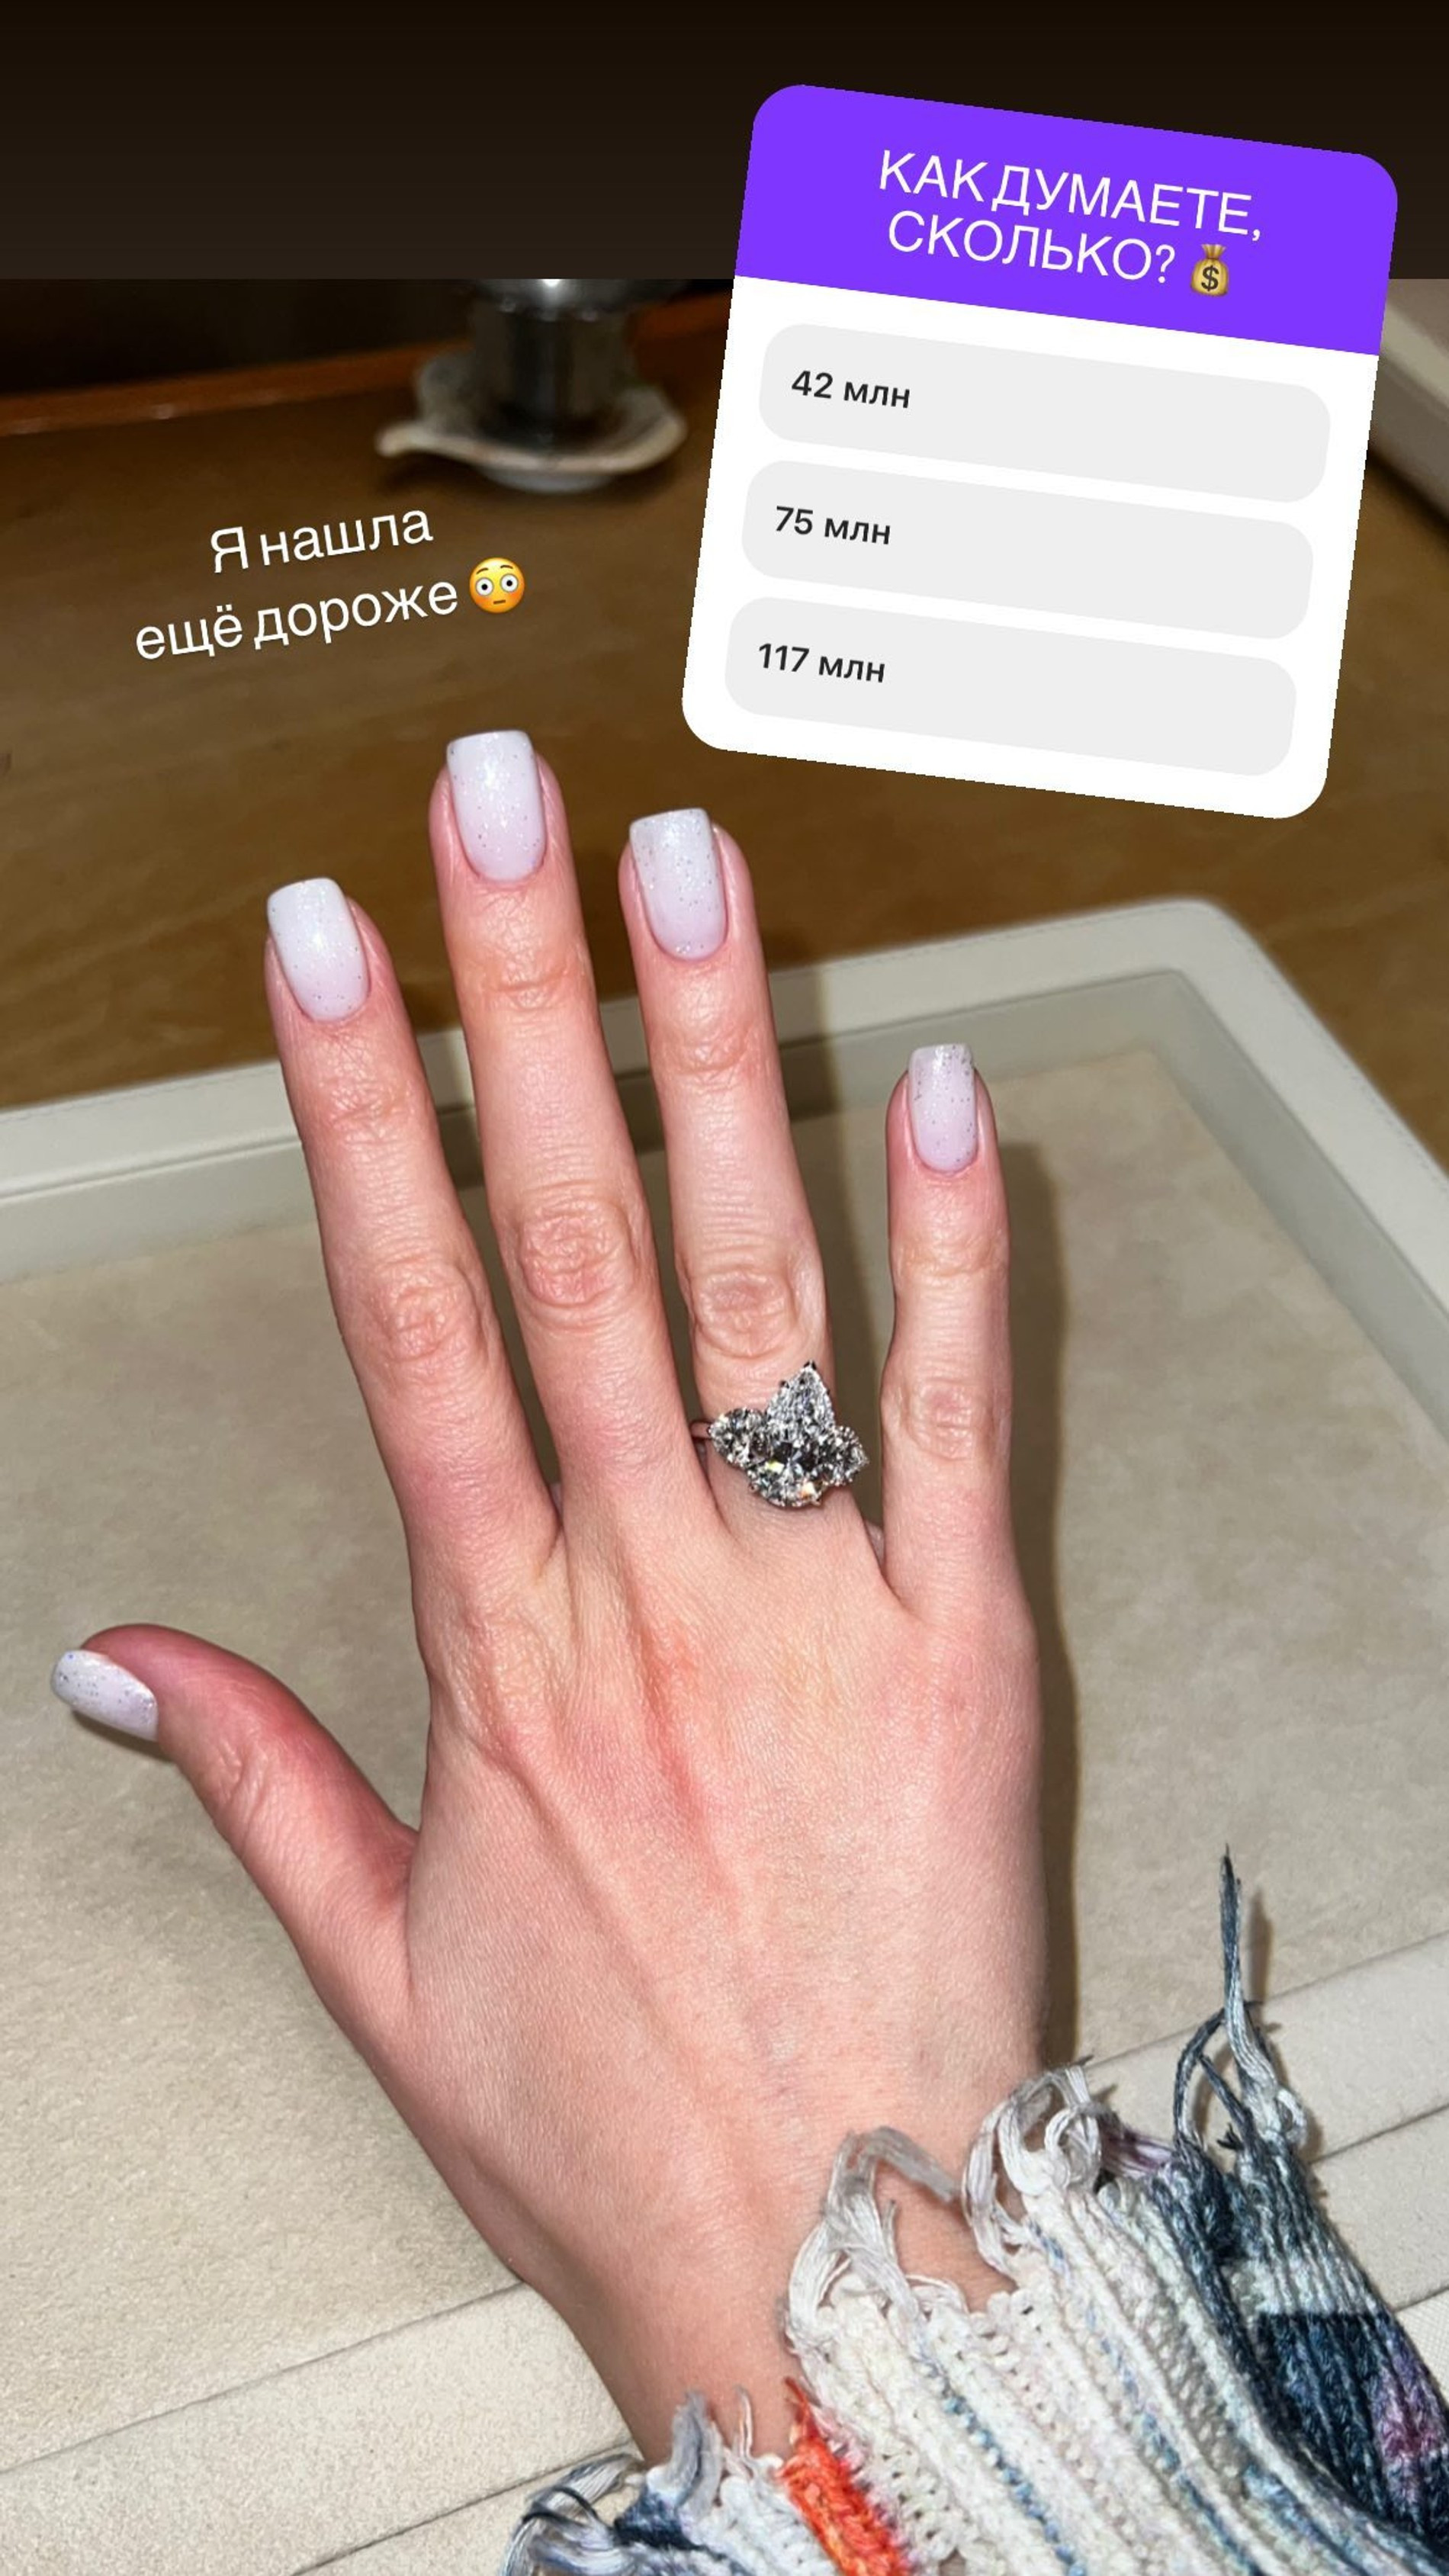 Клава Кока выбирает обручальное кольцо
Фото: Инстаграм (запрещен в РФ) / @klavacoca